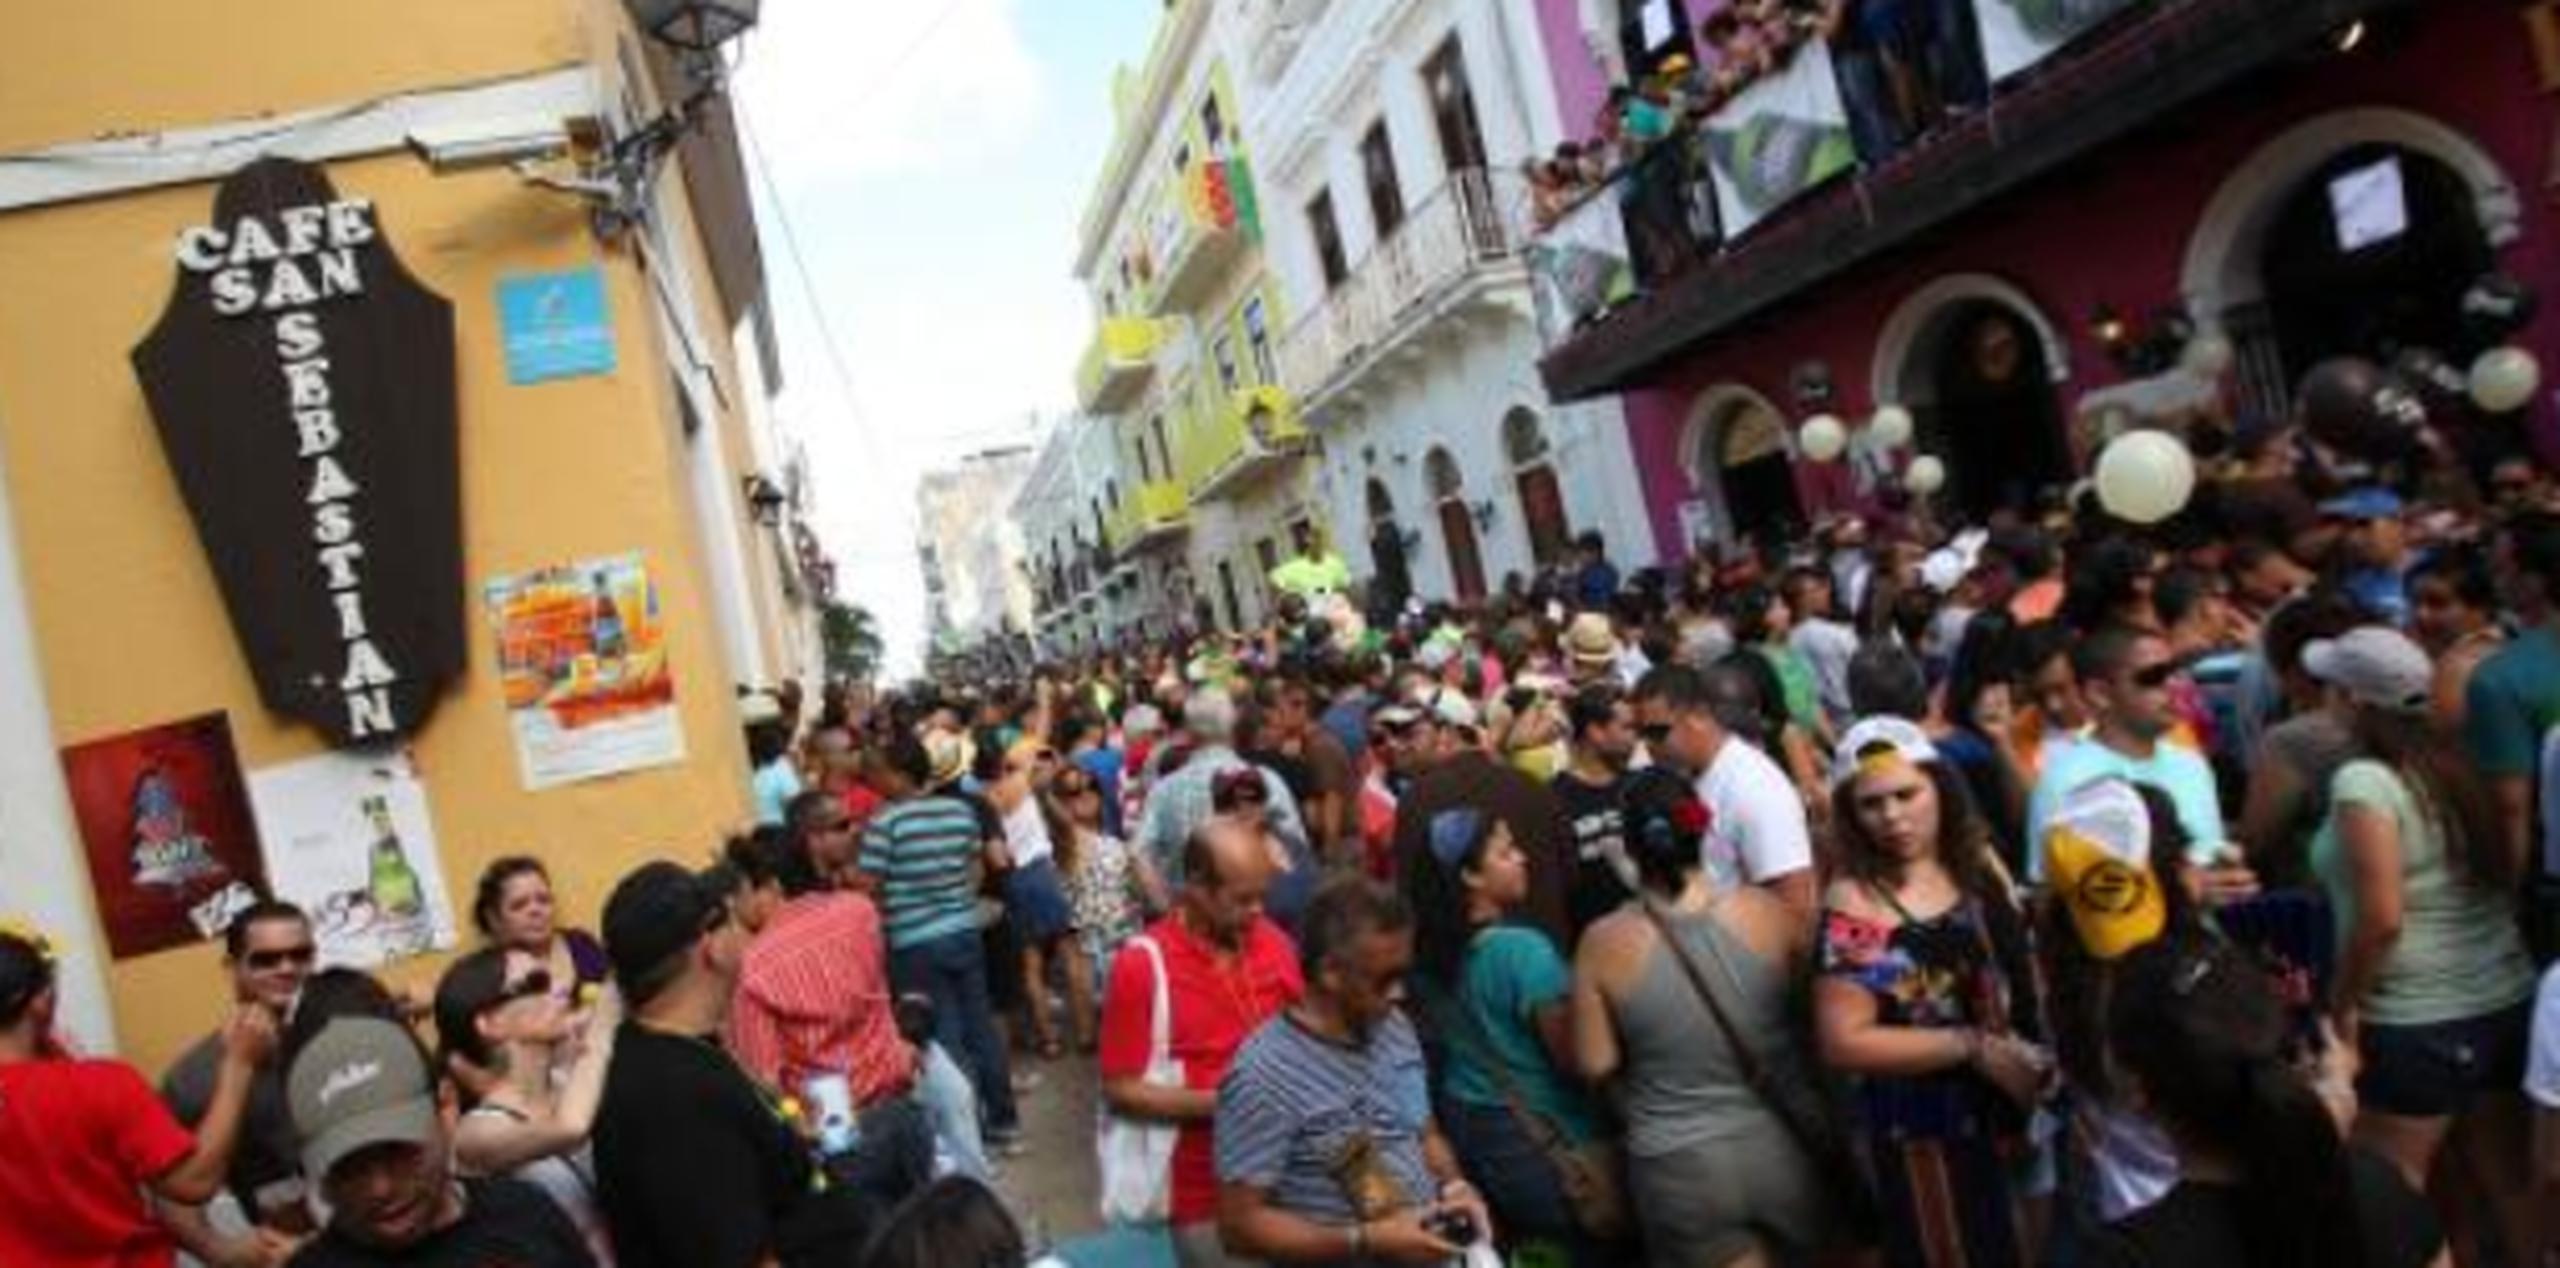 Las Fiestas de la Calle San Sebastián comienzan hoy y terminan el domingo. (Archivo)

